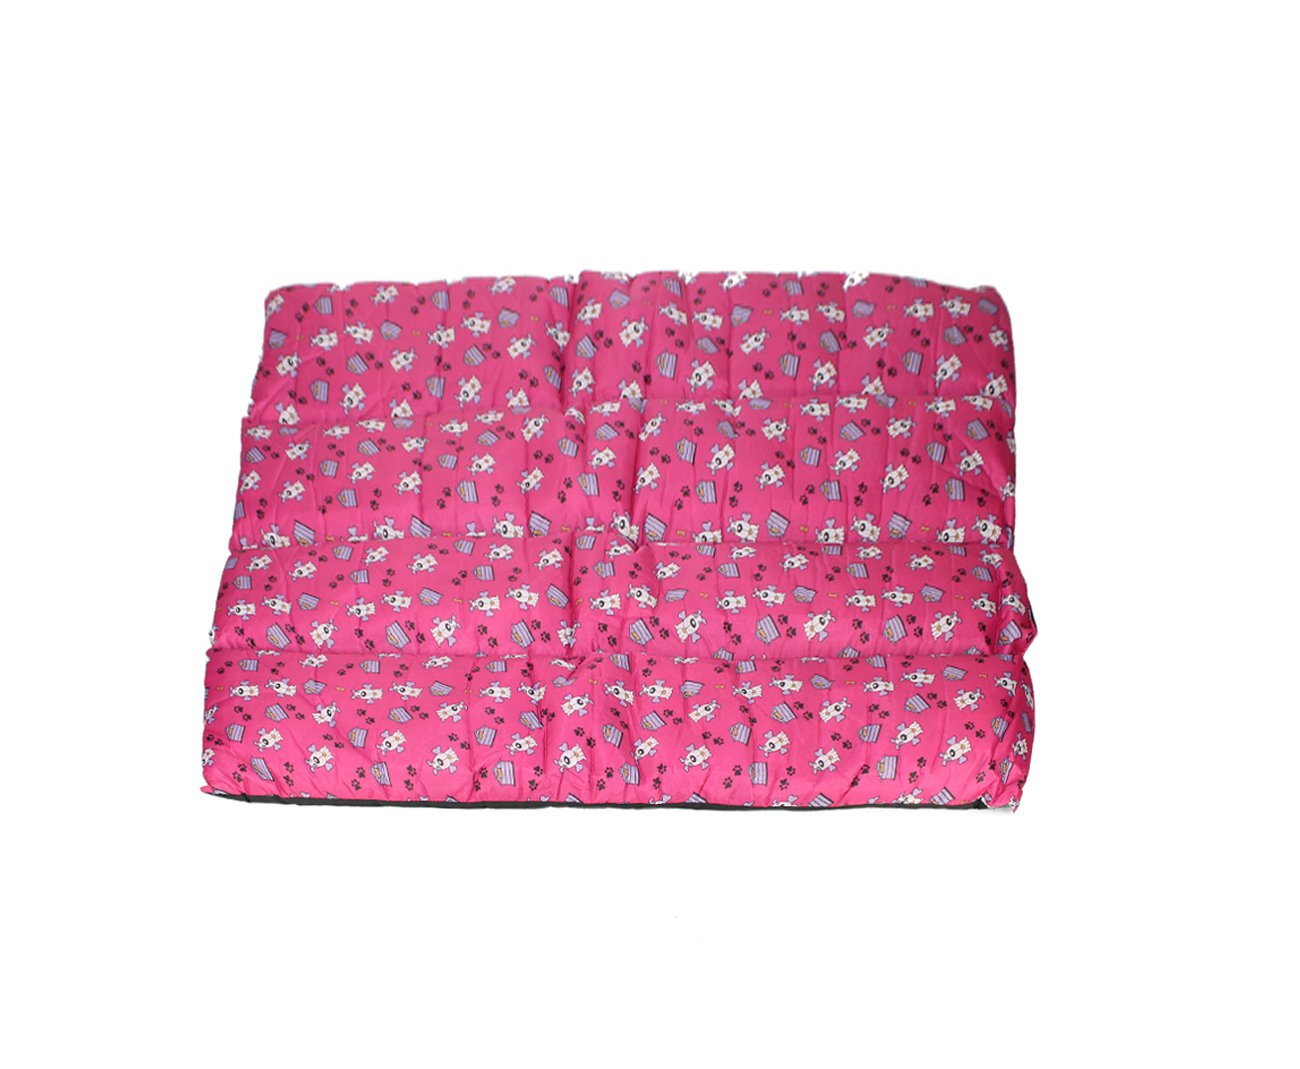 Almofada De Nylon N4 Gg 100x80cm Rosa - Furacãopet